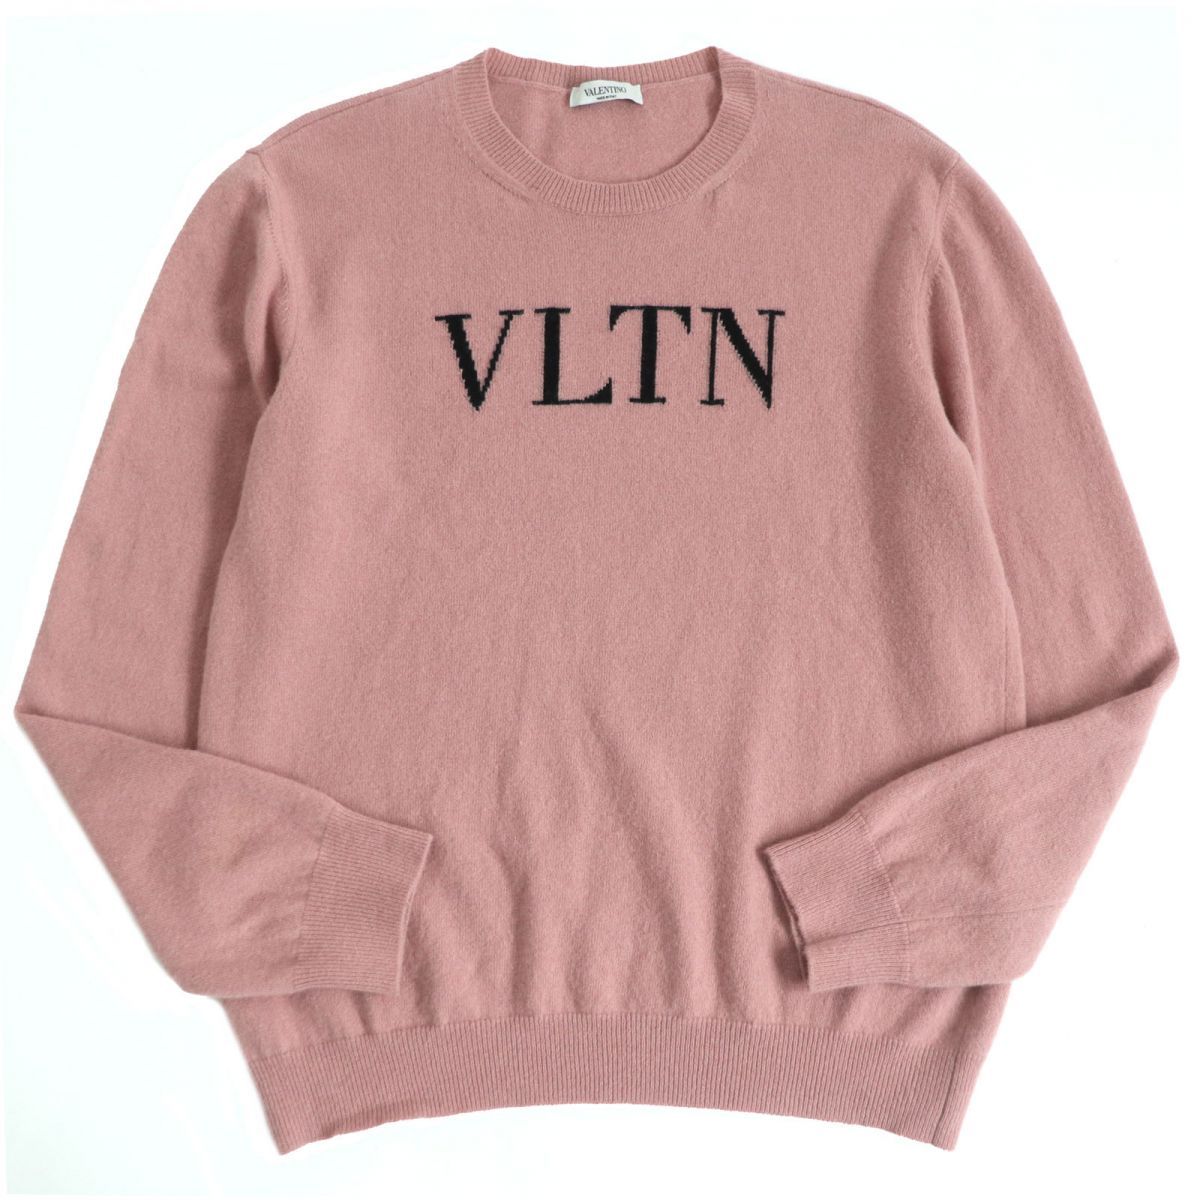 ヴァレンティノ VALENTINO 美品 メンズ トップス ニット セーター 